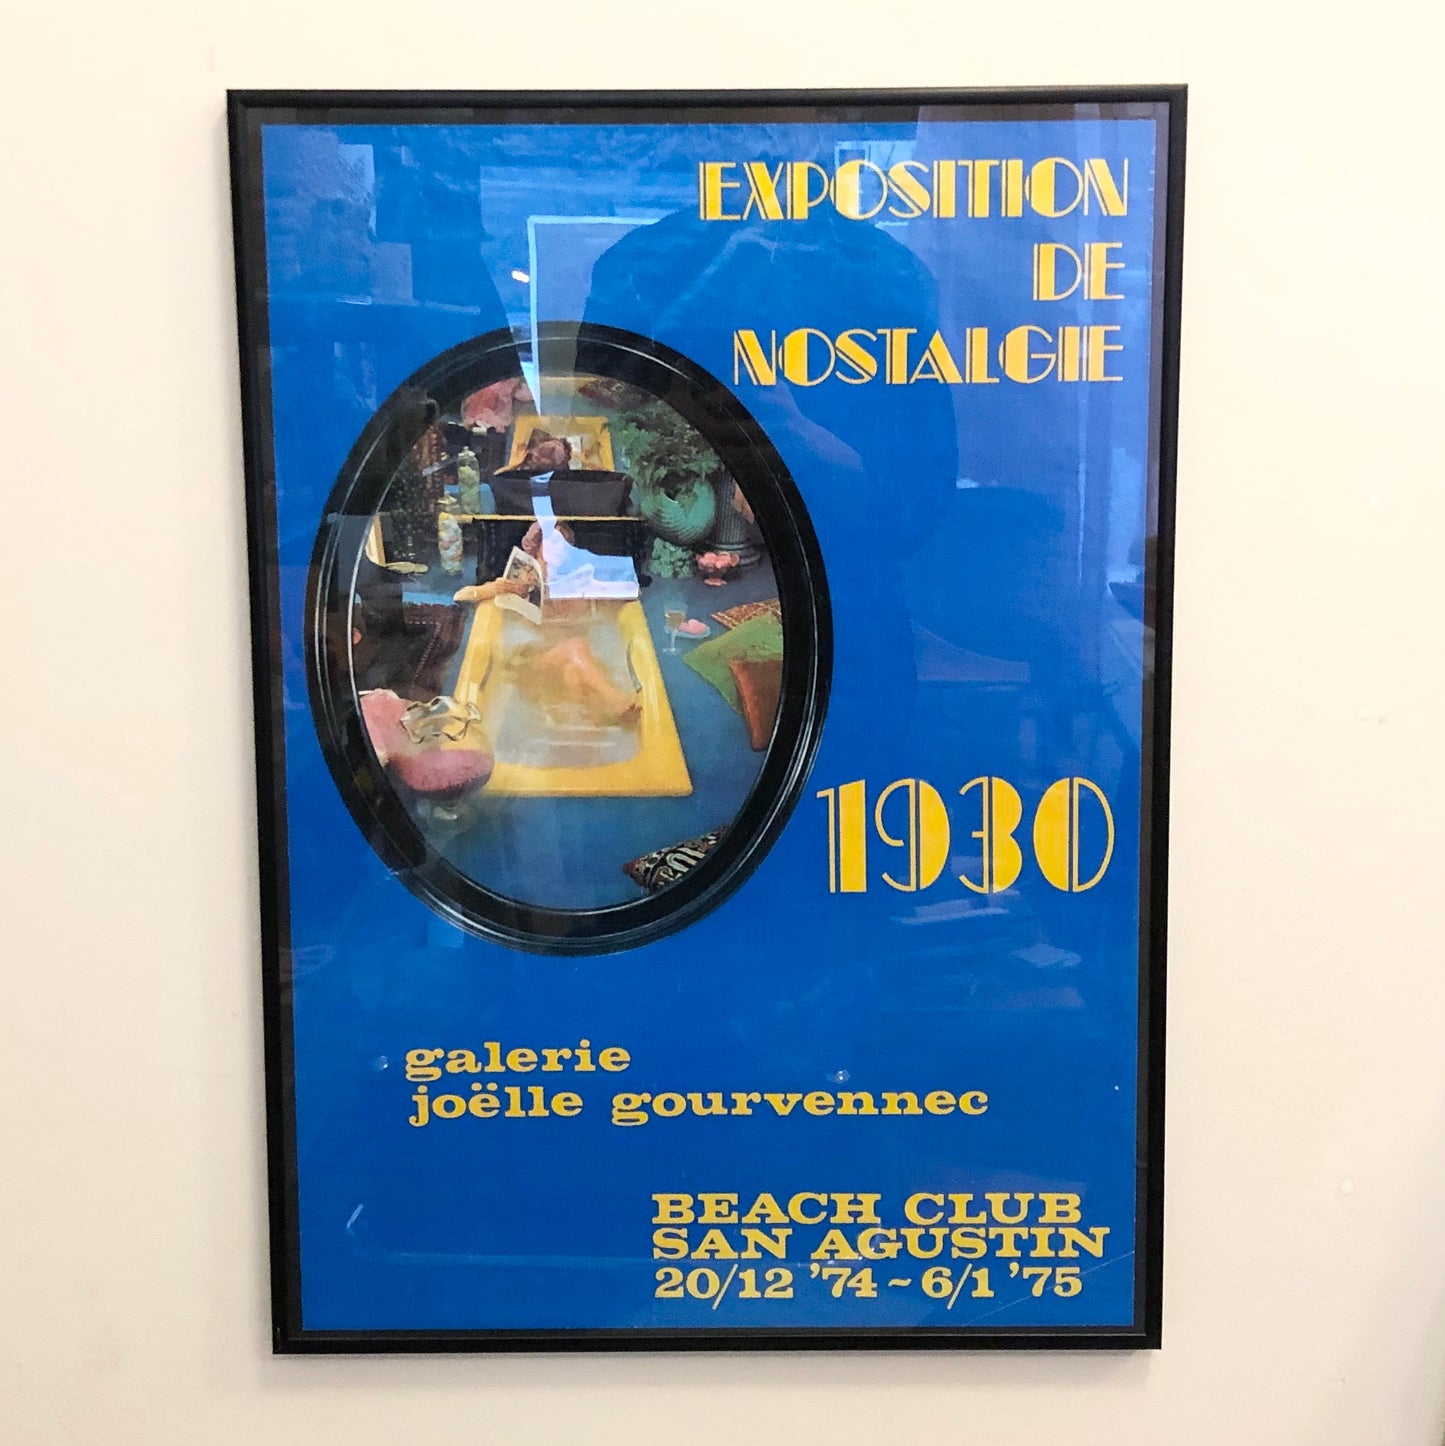 Framed vintage poster - "Exposition De Nostalgie", 1930  Galier Joelle Gourvennec